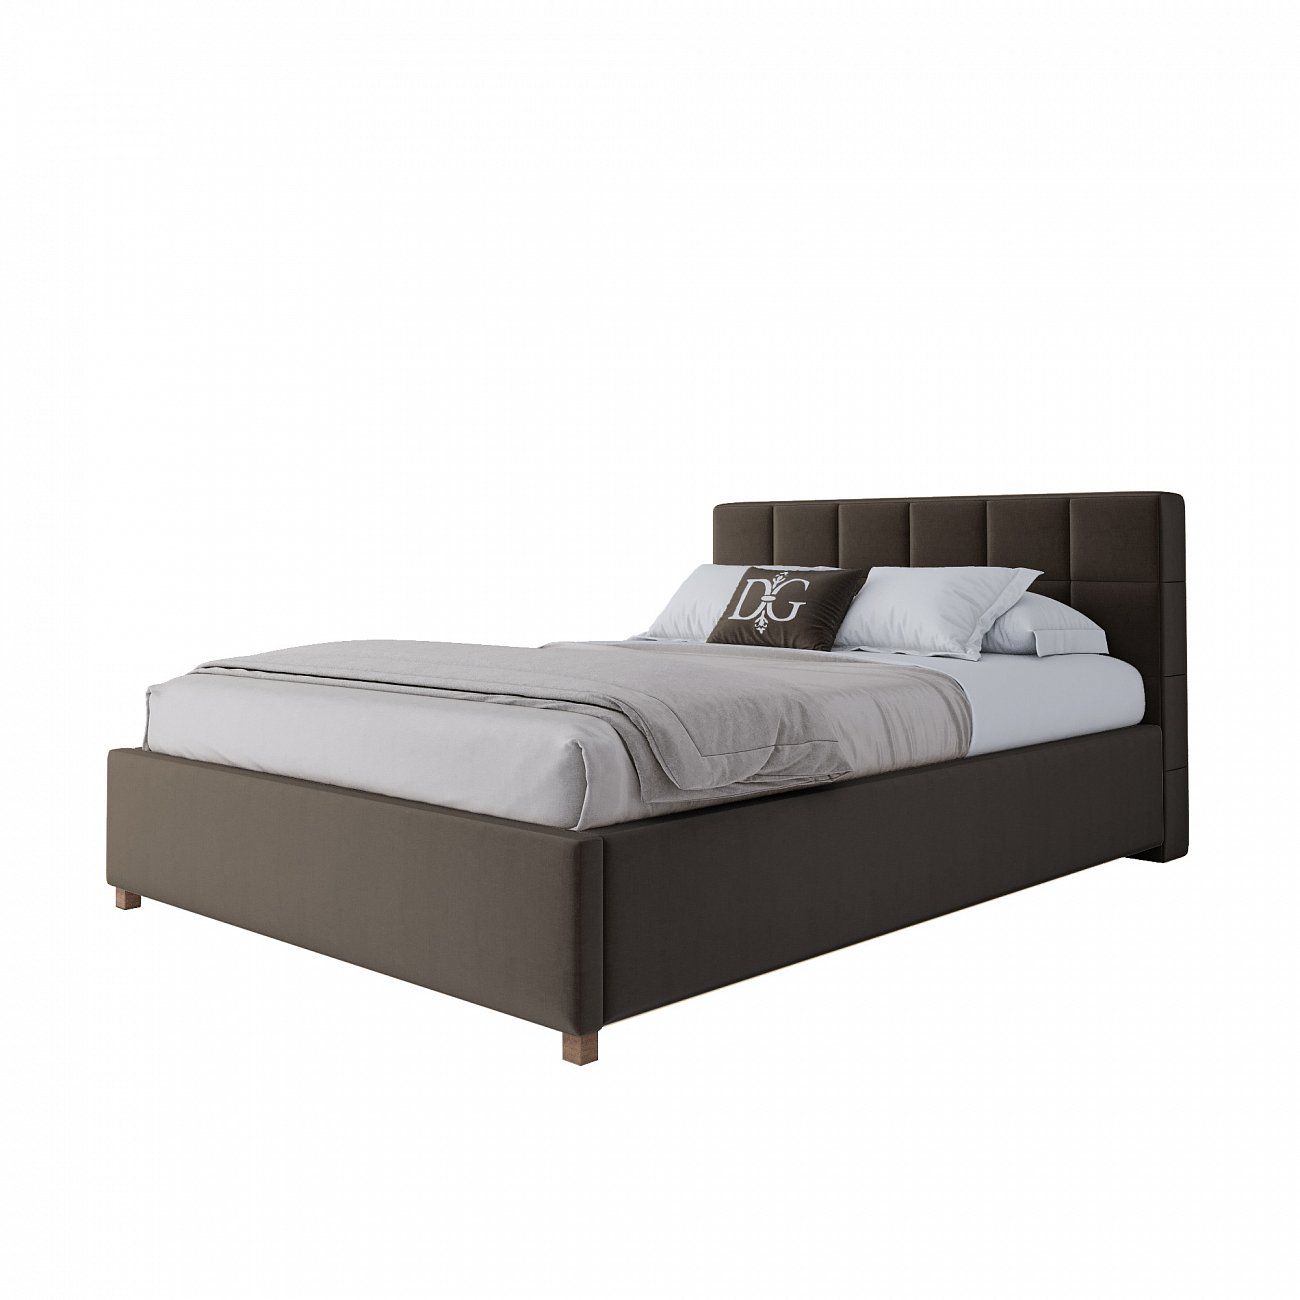 Teenage bed 140x200 cm brown Wales